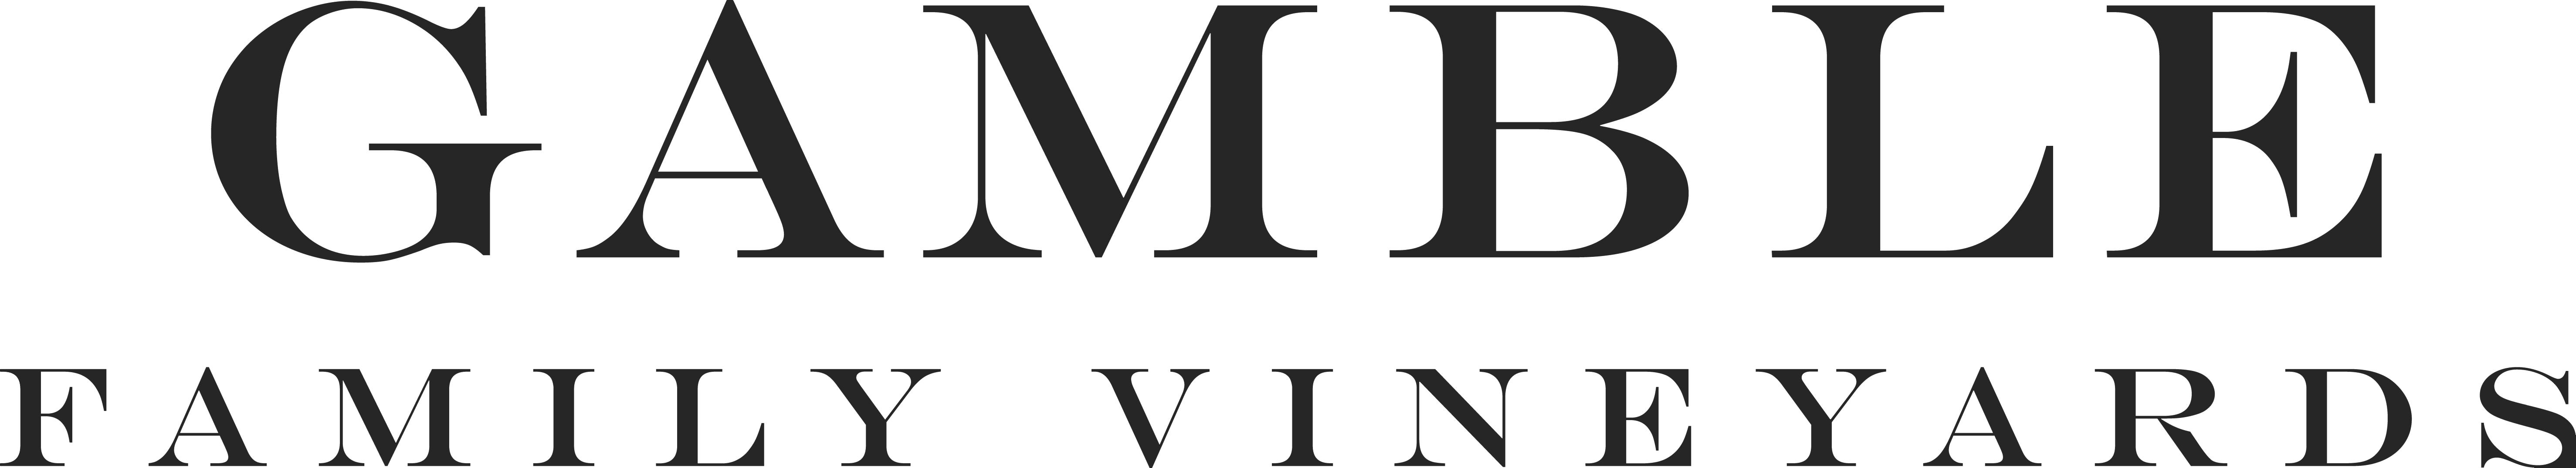 Gamble Family Vineyards logo